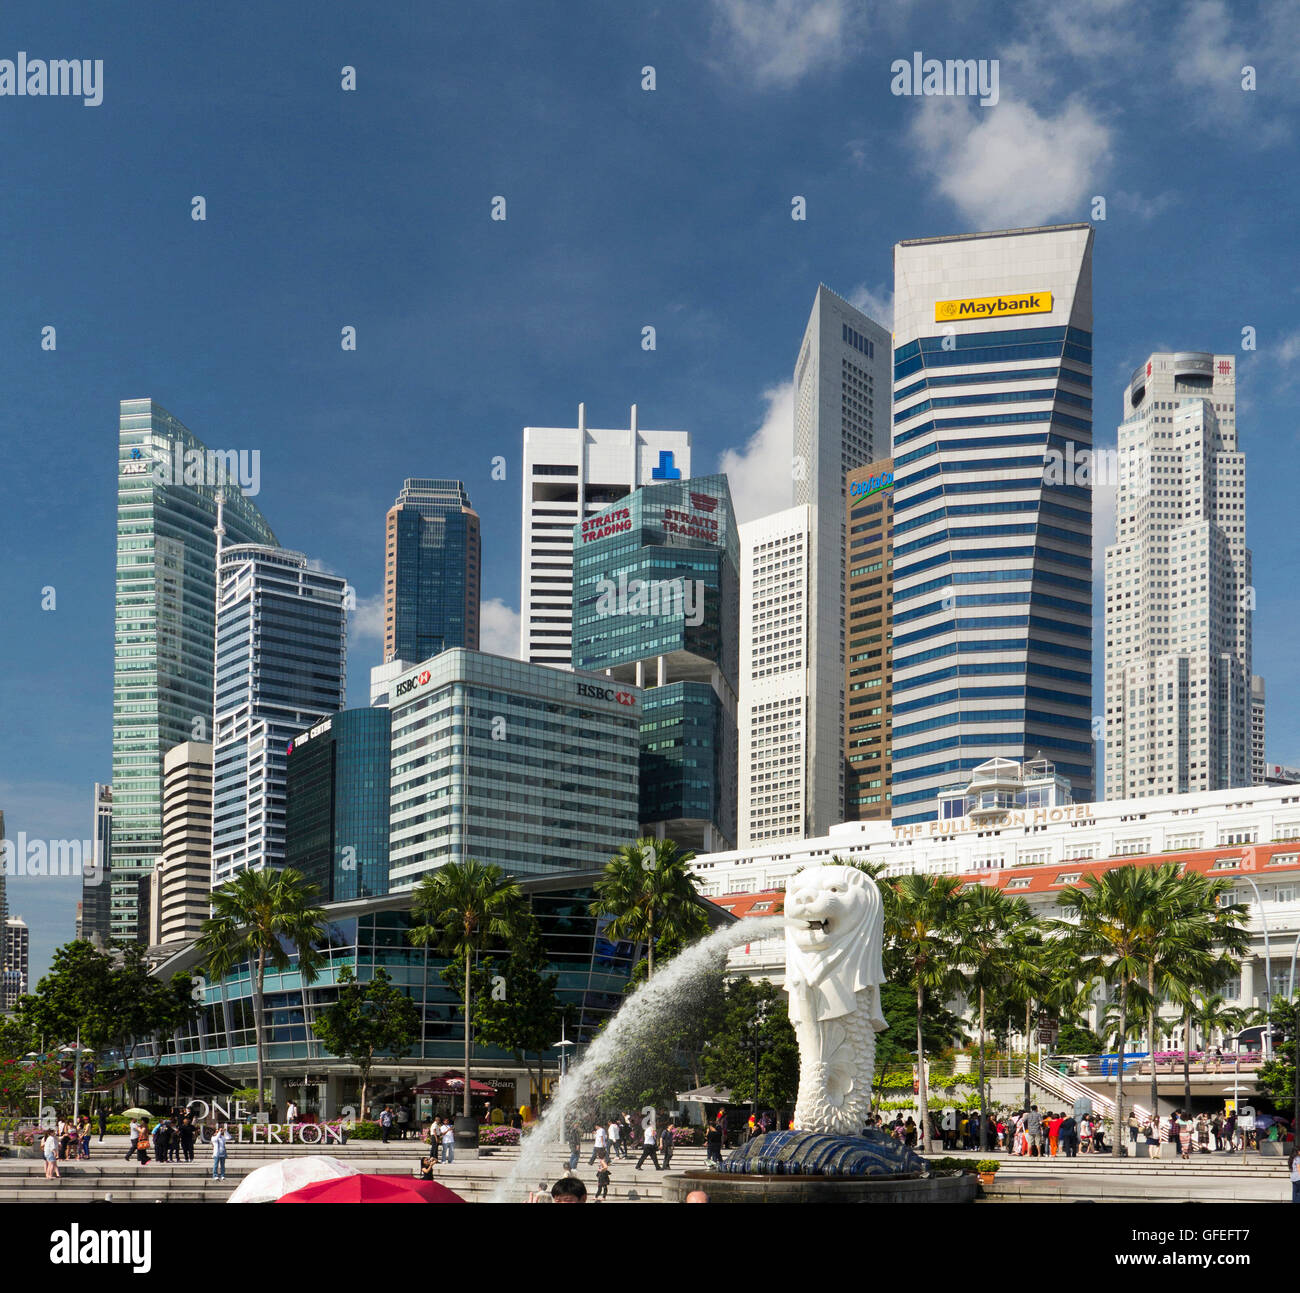 Statua Merlion e acqua beccuccio, Singapore Waterfront, Singapore Foto Stock